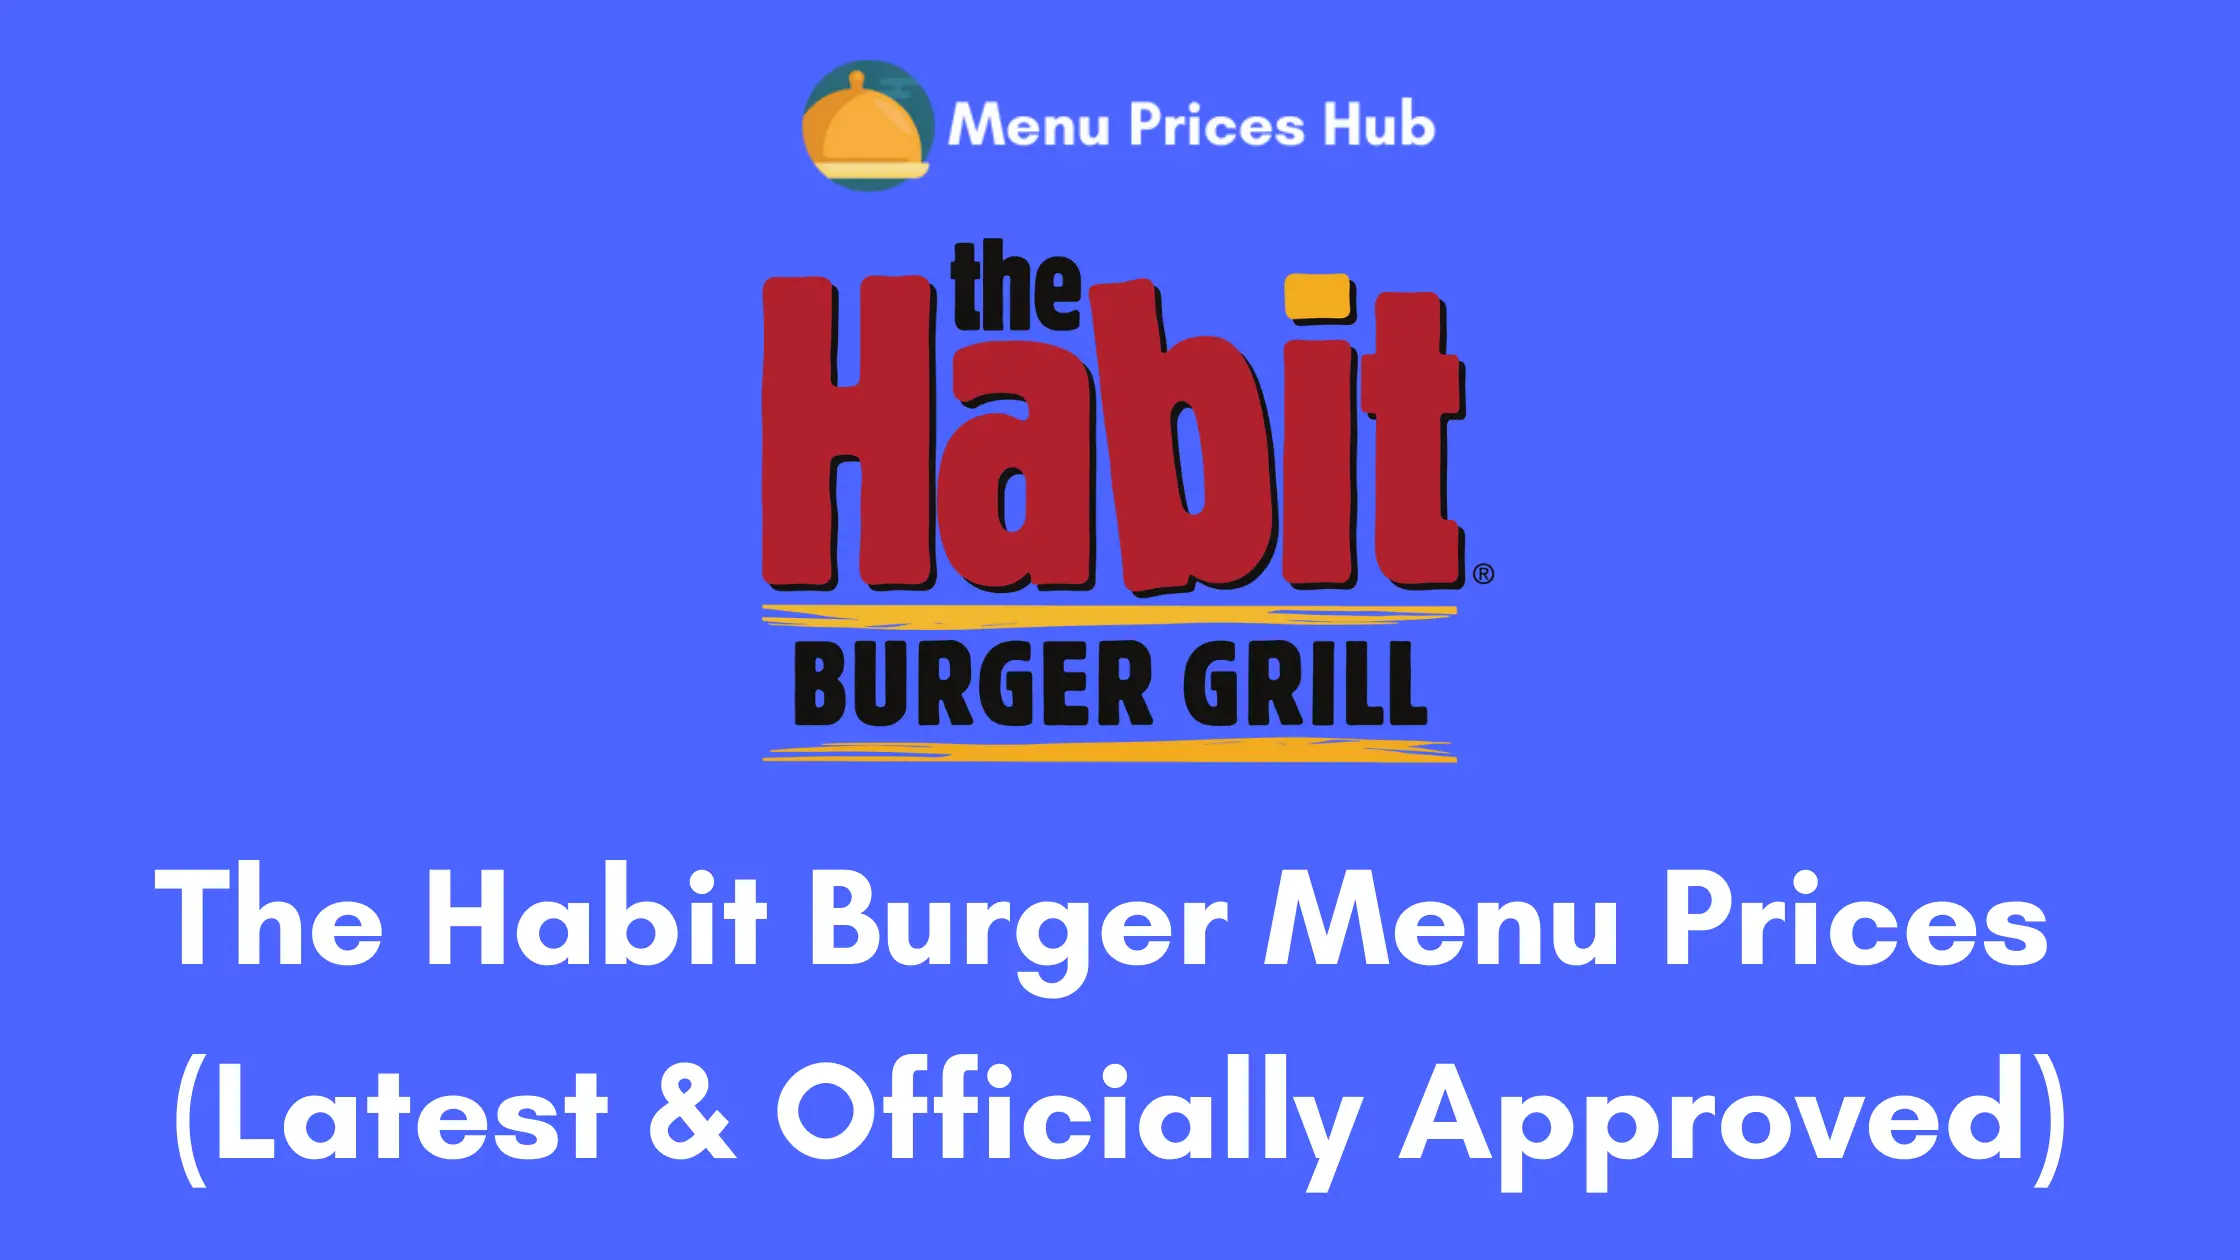 The Habit Burger Menu Prices